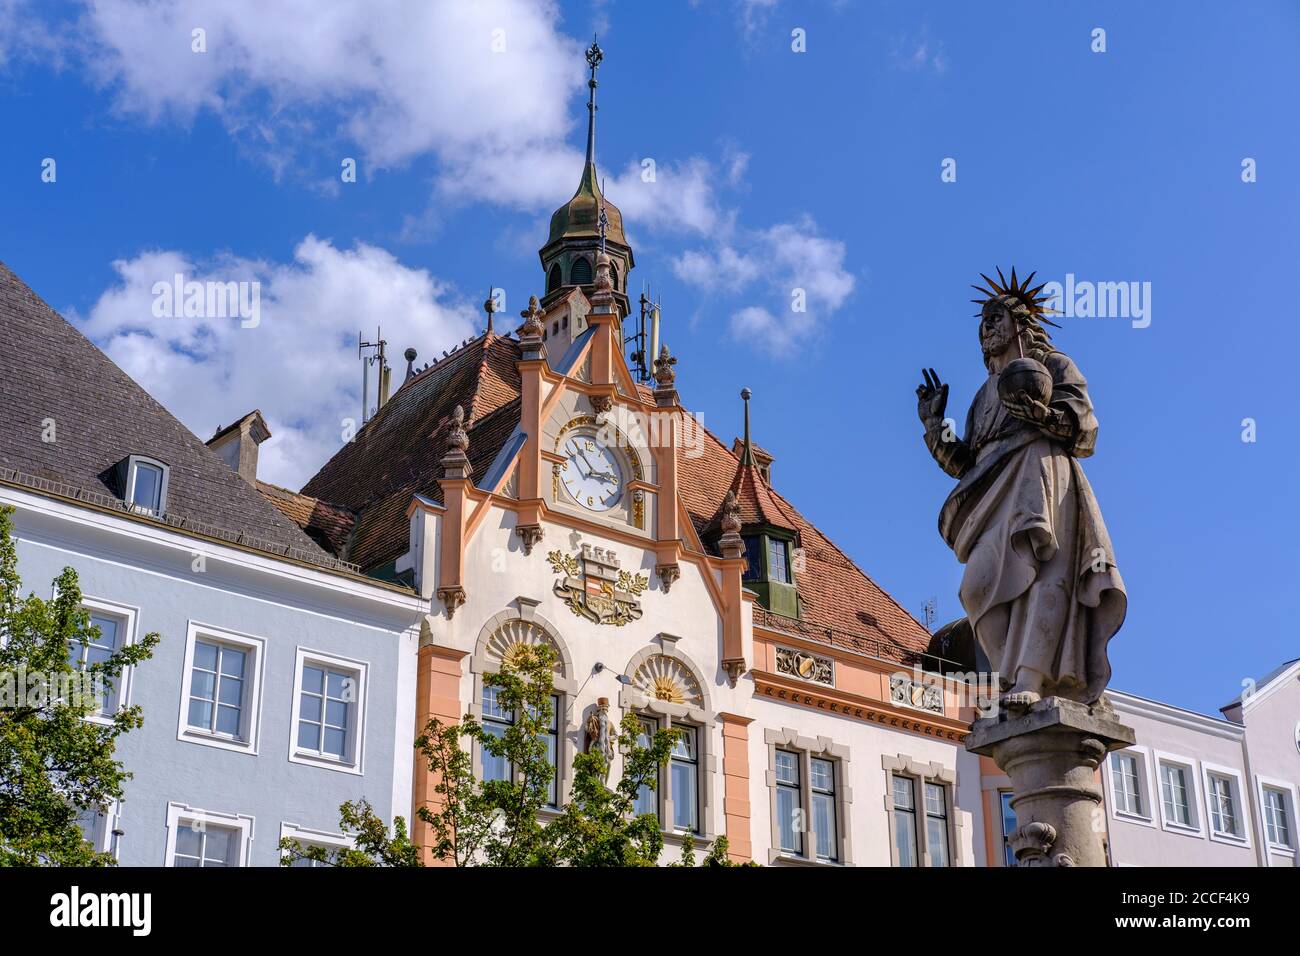 Statue of the Savior with globe on Fischerbrunnen and town hall, Braunau am Inn, Innviertel, Upper Austria, Austria Stock Photo